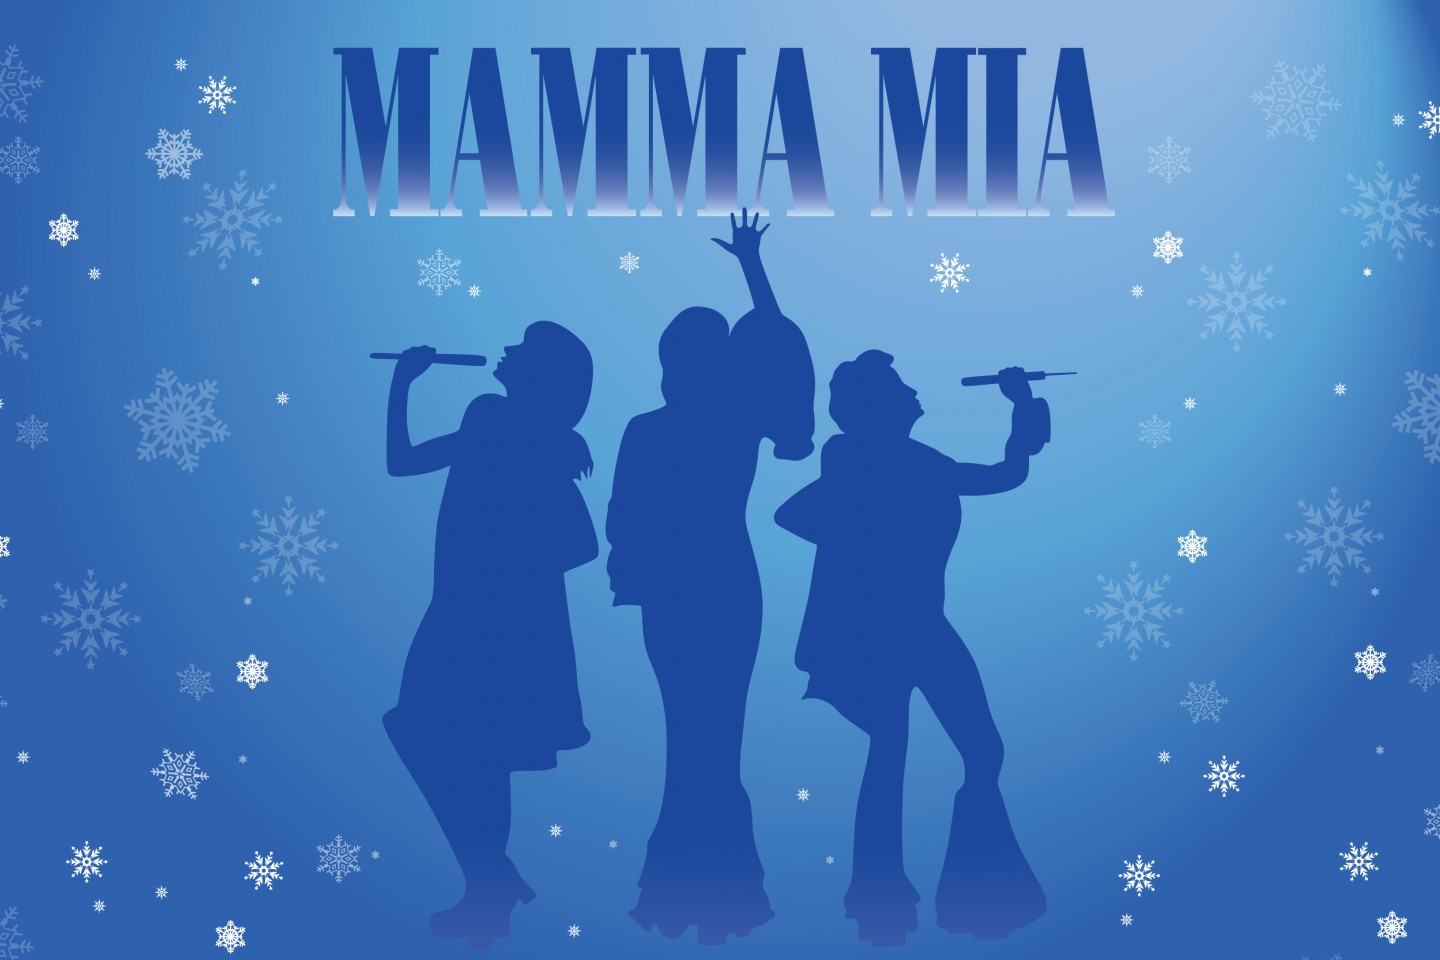 Mamma mia Mamma Mia in 2019 Mamma mia Musical theatre HD phone wallpaper   Pxfuel